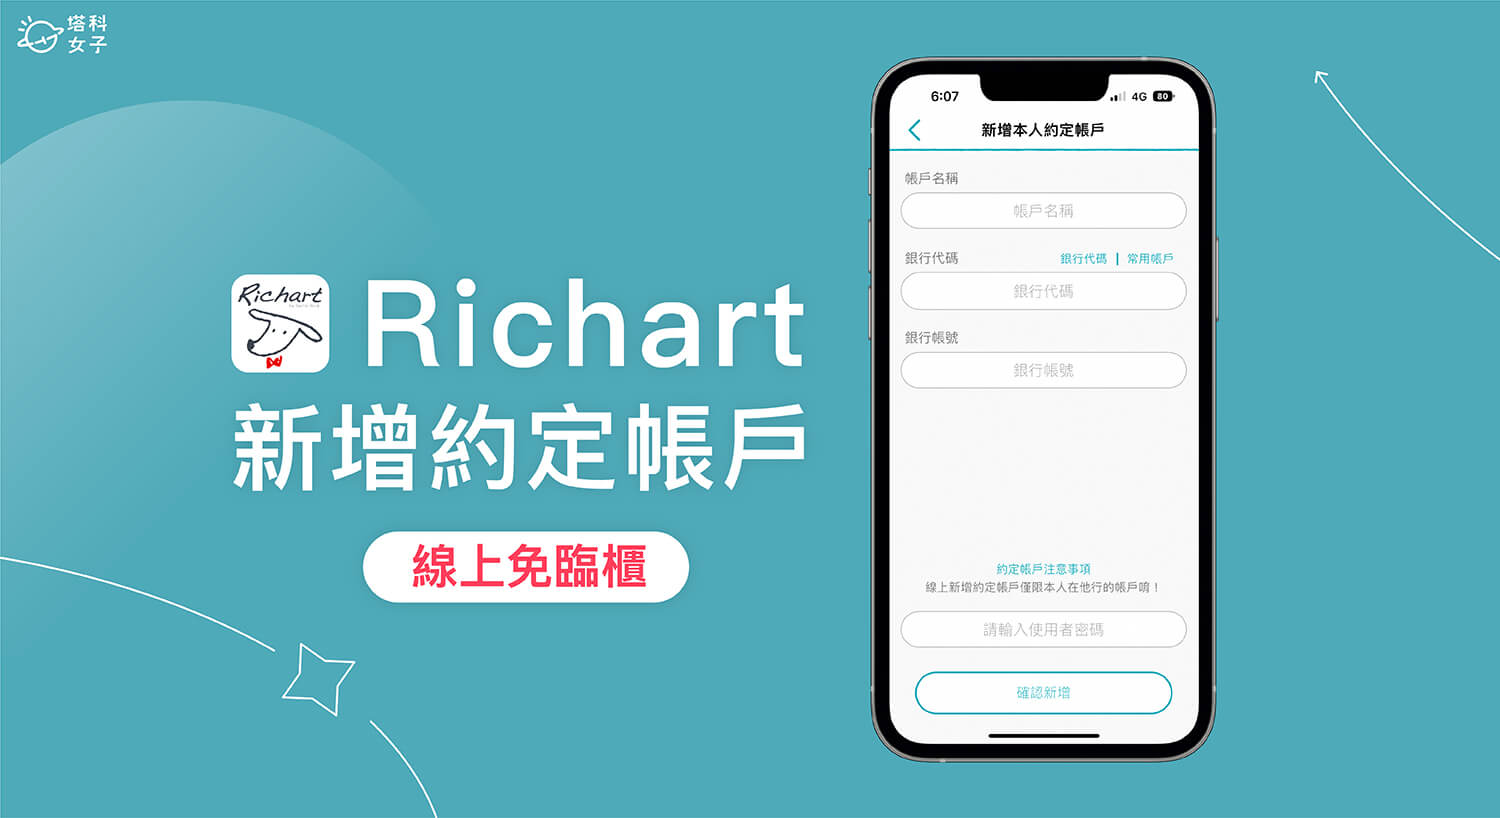 Richart 約定帳戶設定教學，透過 App 線上新增約定帳號免臨櫃